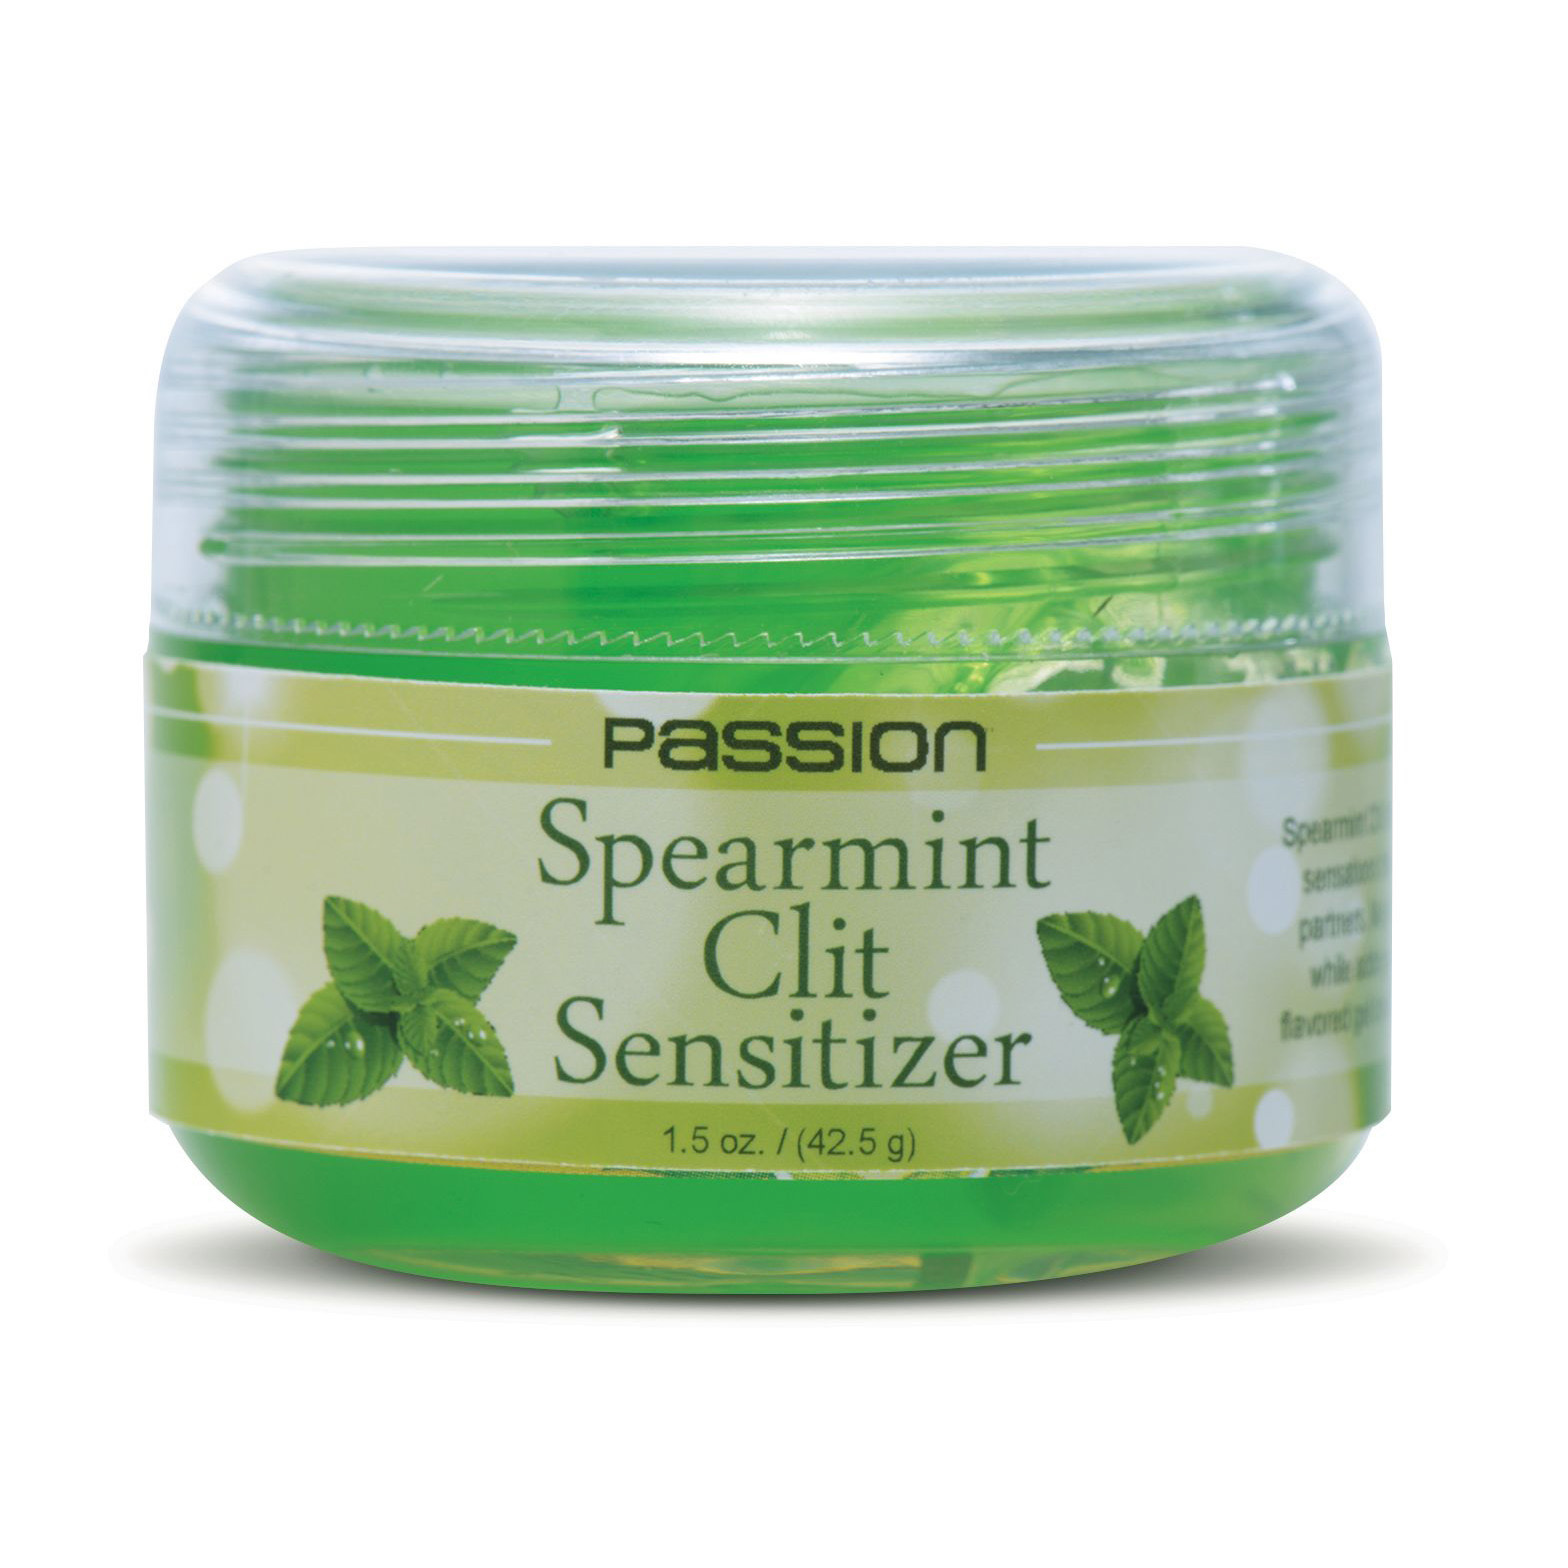 Passion Spearmint Clit Sensitizer – 1.5 oz